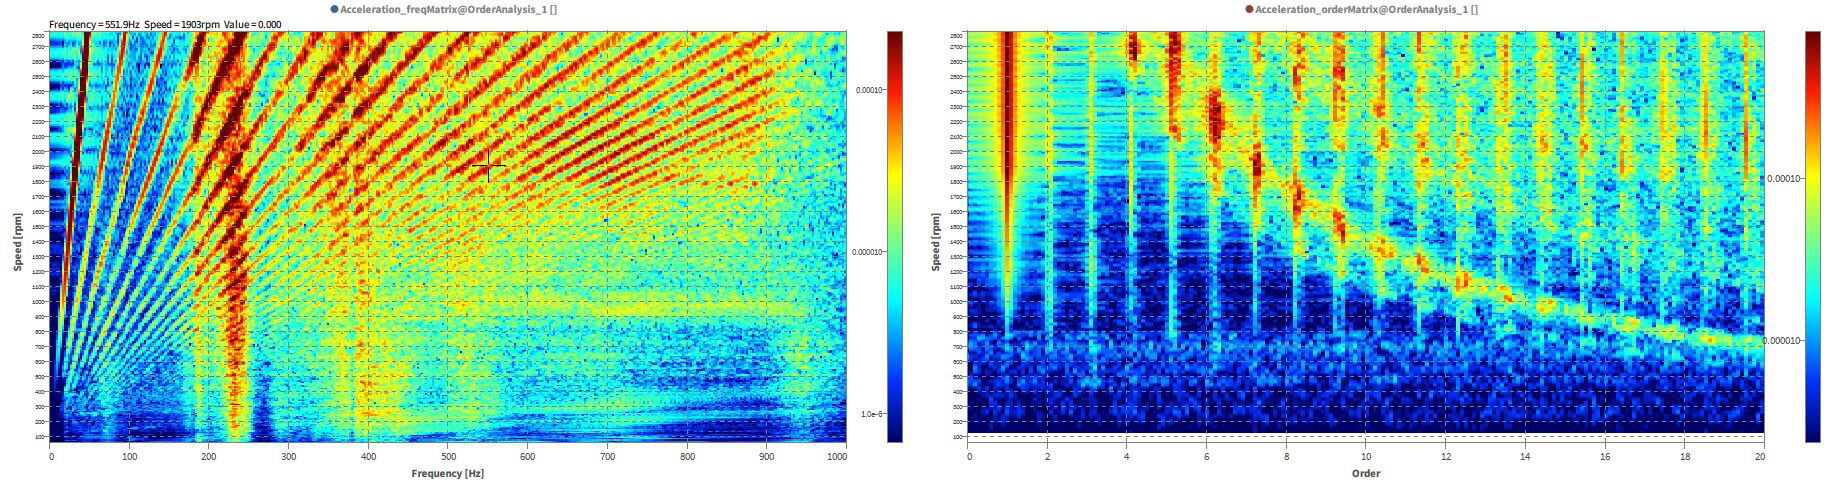 frequency spectrum & order spectrum